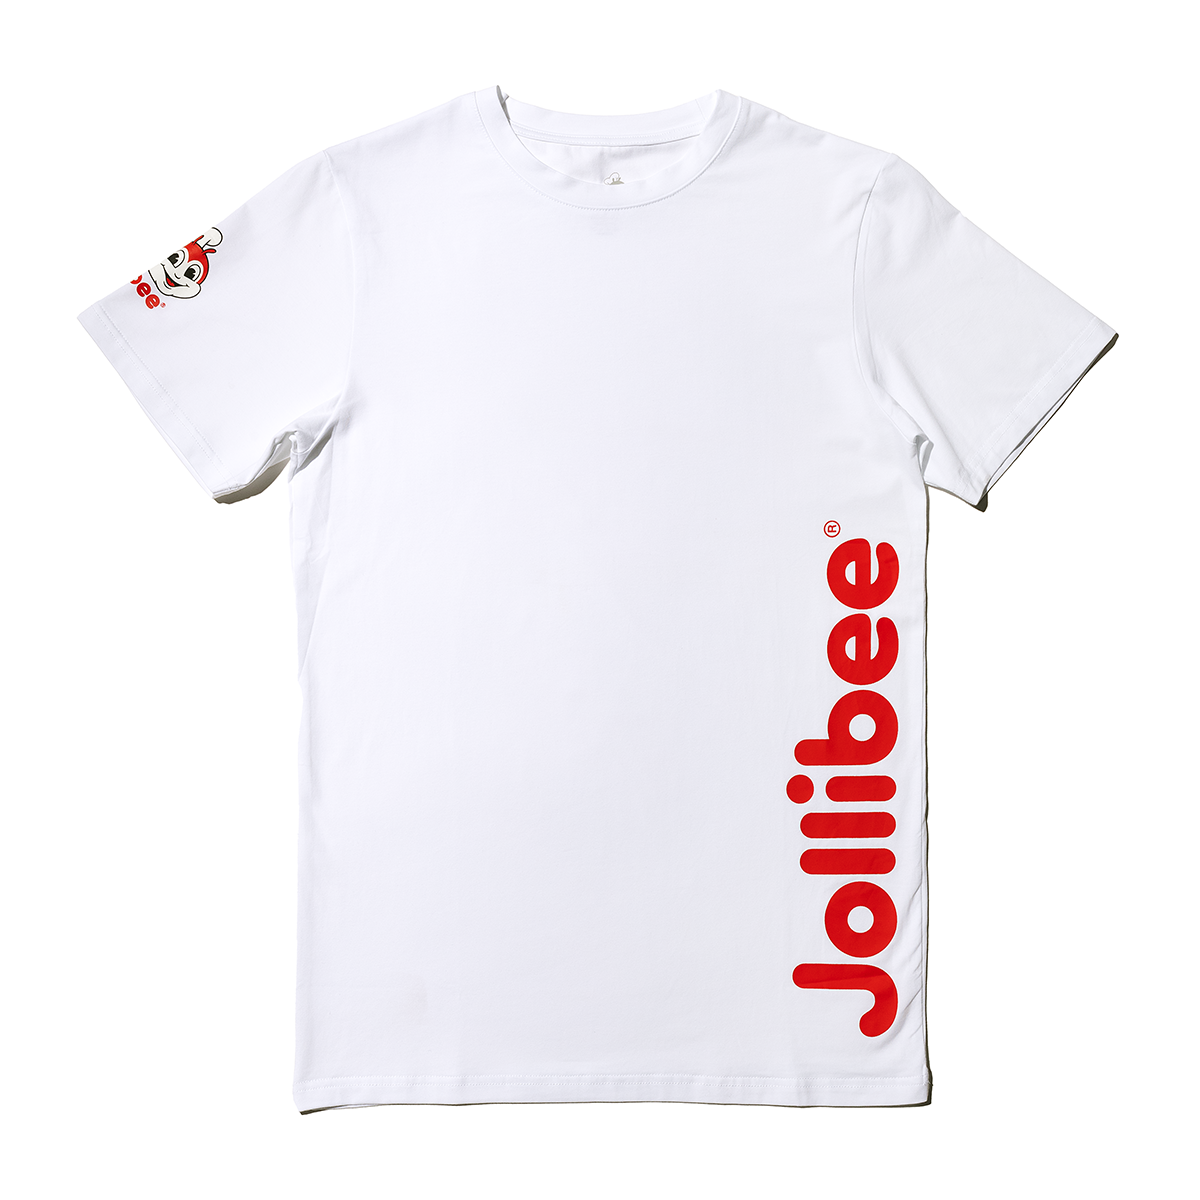 Classic Jollibee White T-shirt